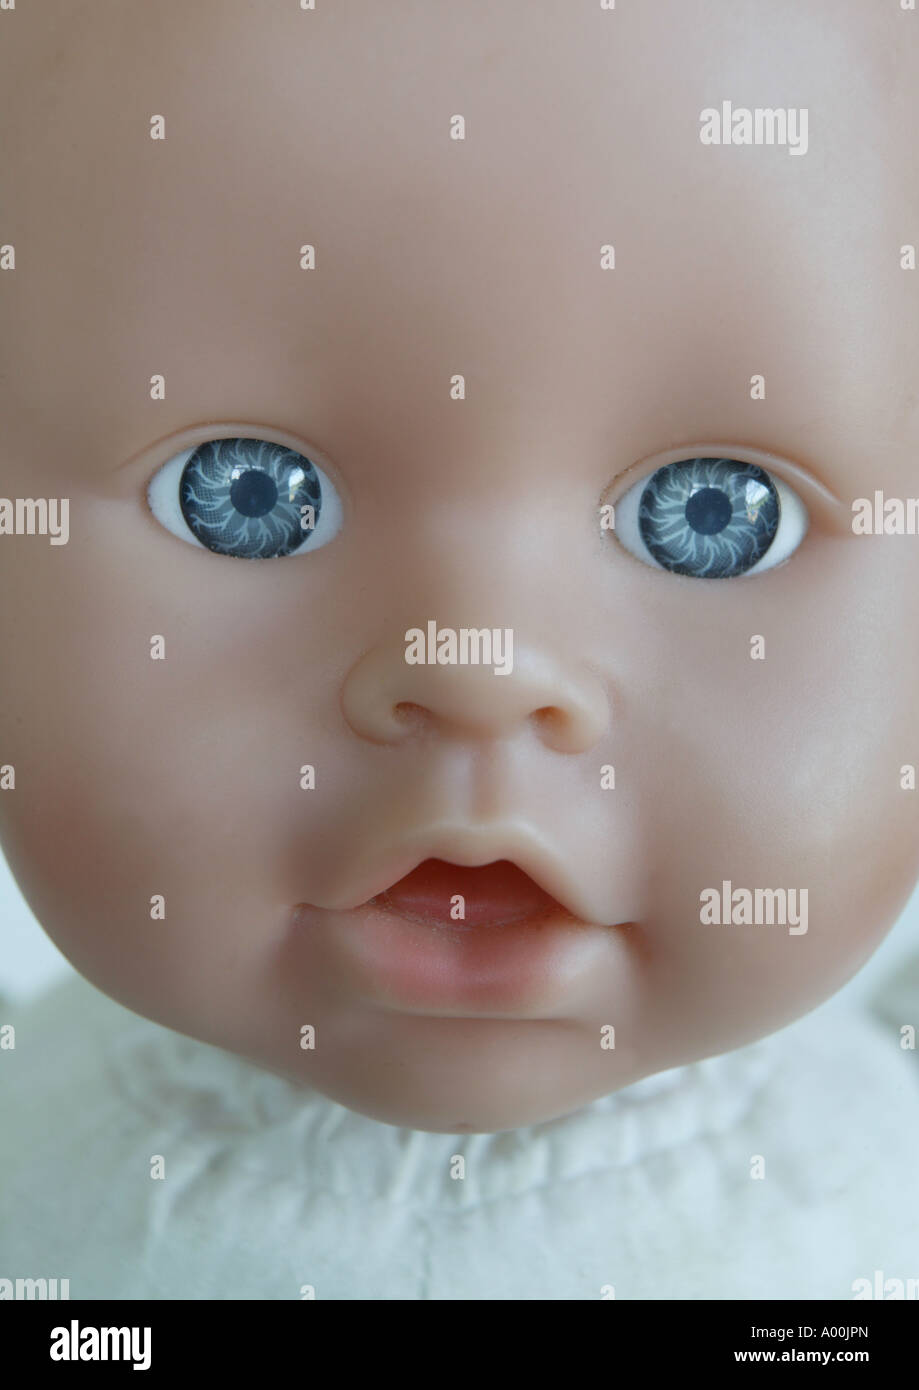 Ojos de muñecas fotografías e imágenes de alta resolución - Alamy